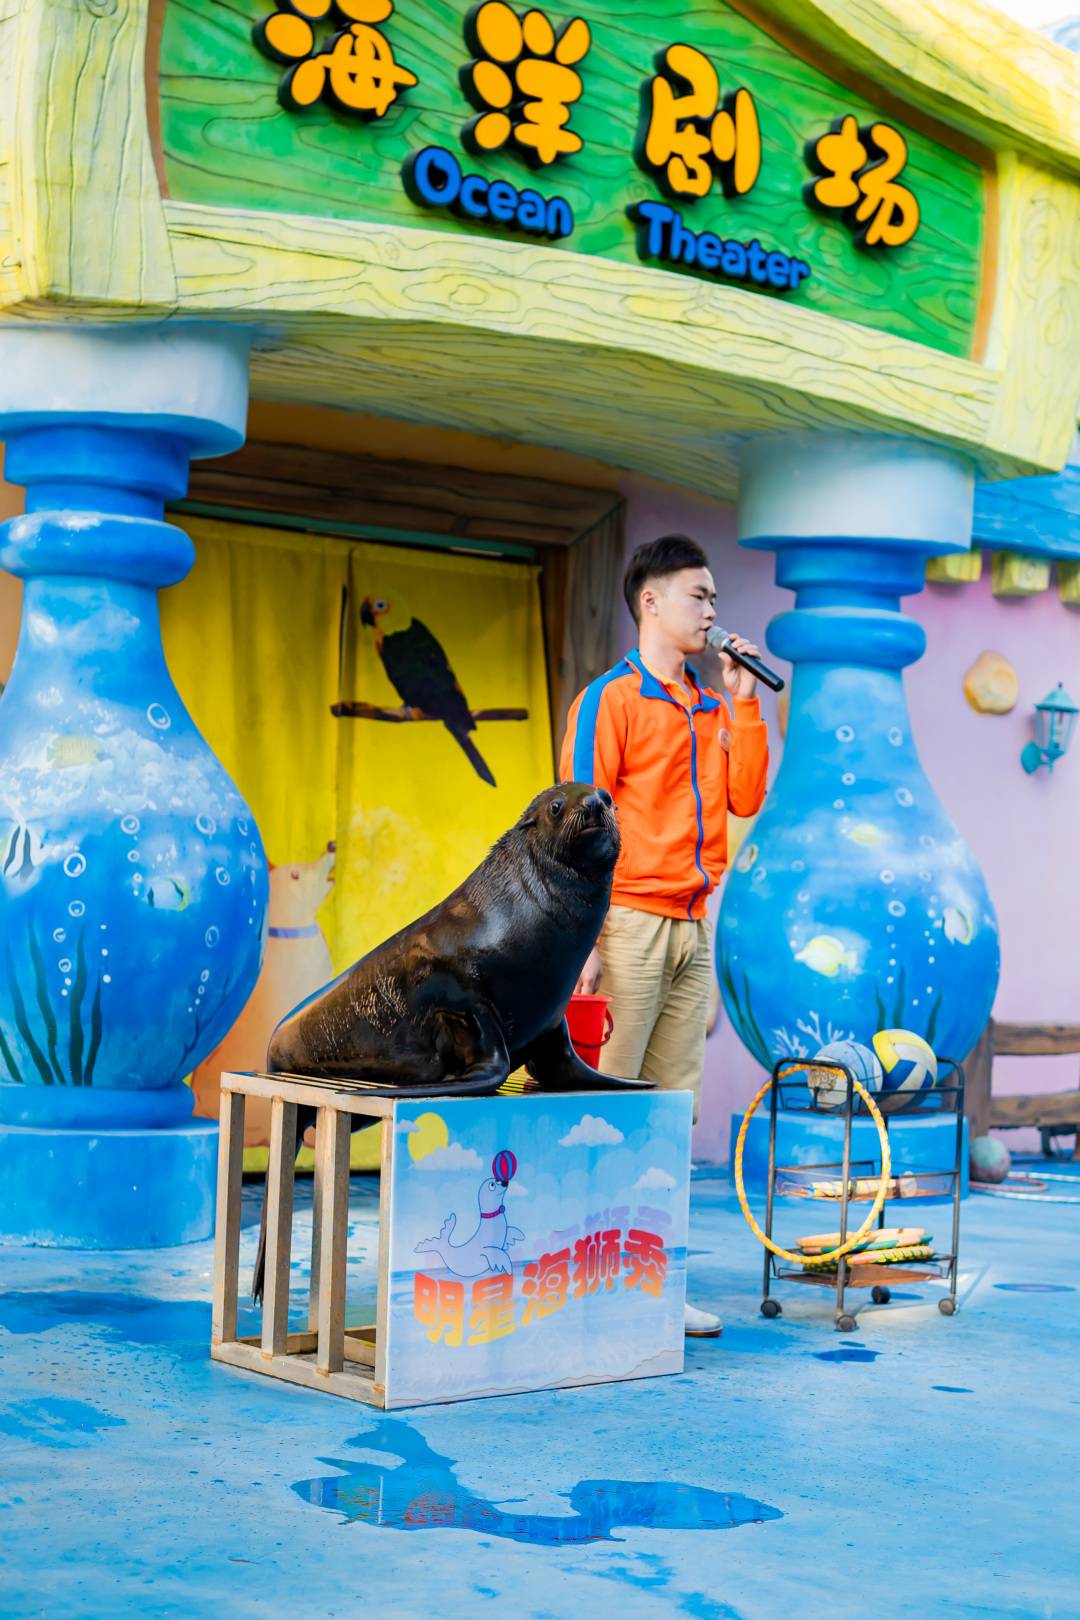 【7-8月特惠】广州融创国际马戏+明星动物园三人票，有效期7月1日-8月31日内入园一次